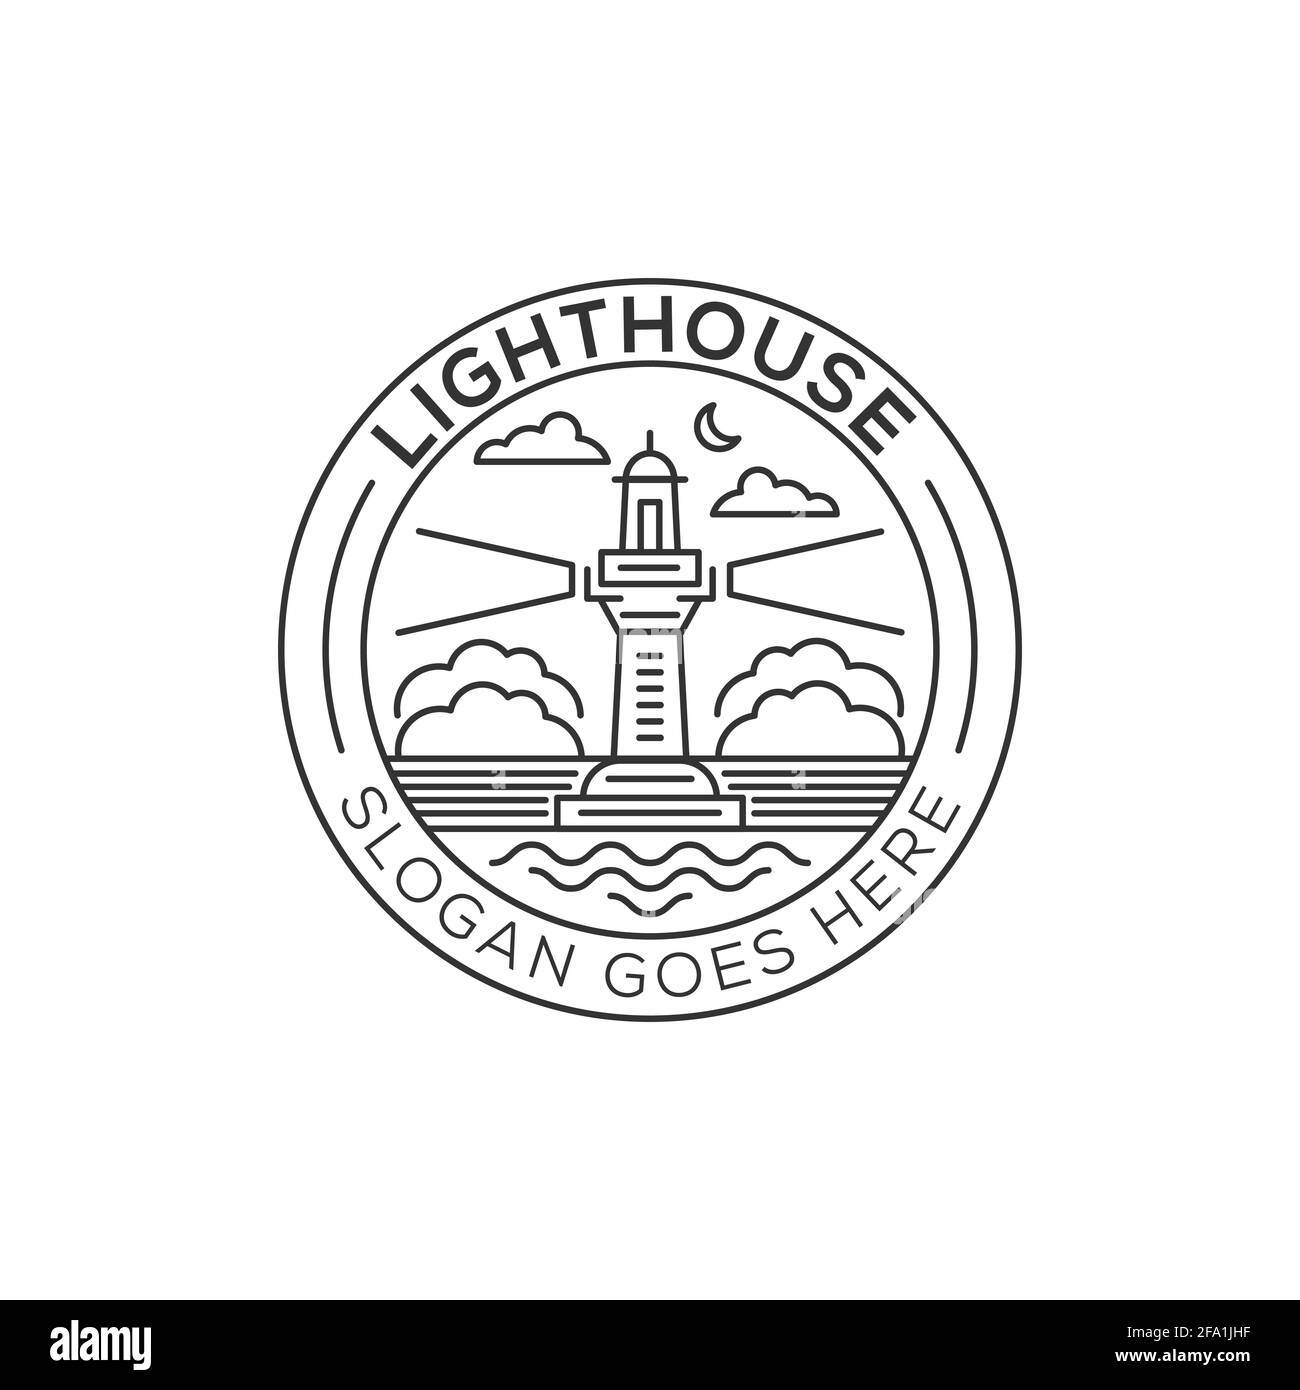 Outline Light house logo design, lighthouse icon vector illustration line art style Stock Vector